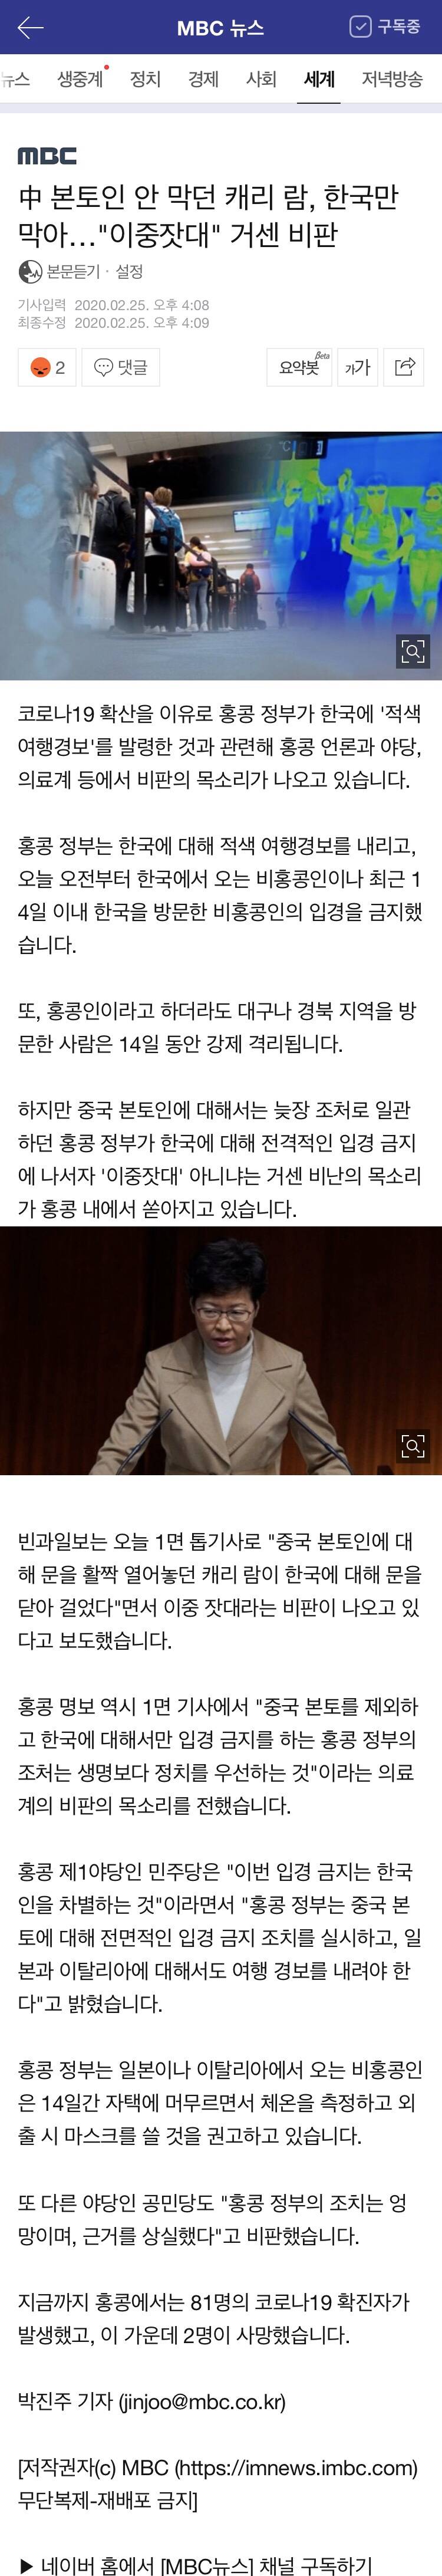 中 본토인 안 막던 캐리 람, 한국만 막아.."이중잣대"거센 비판 | 인스티즈